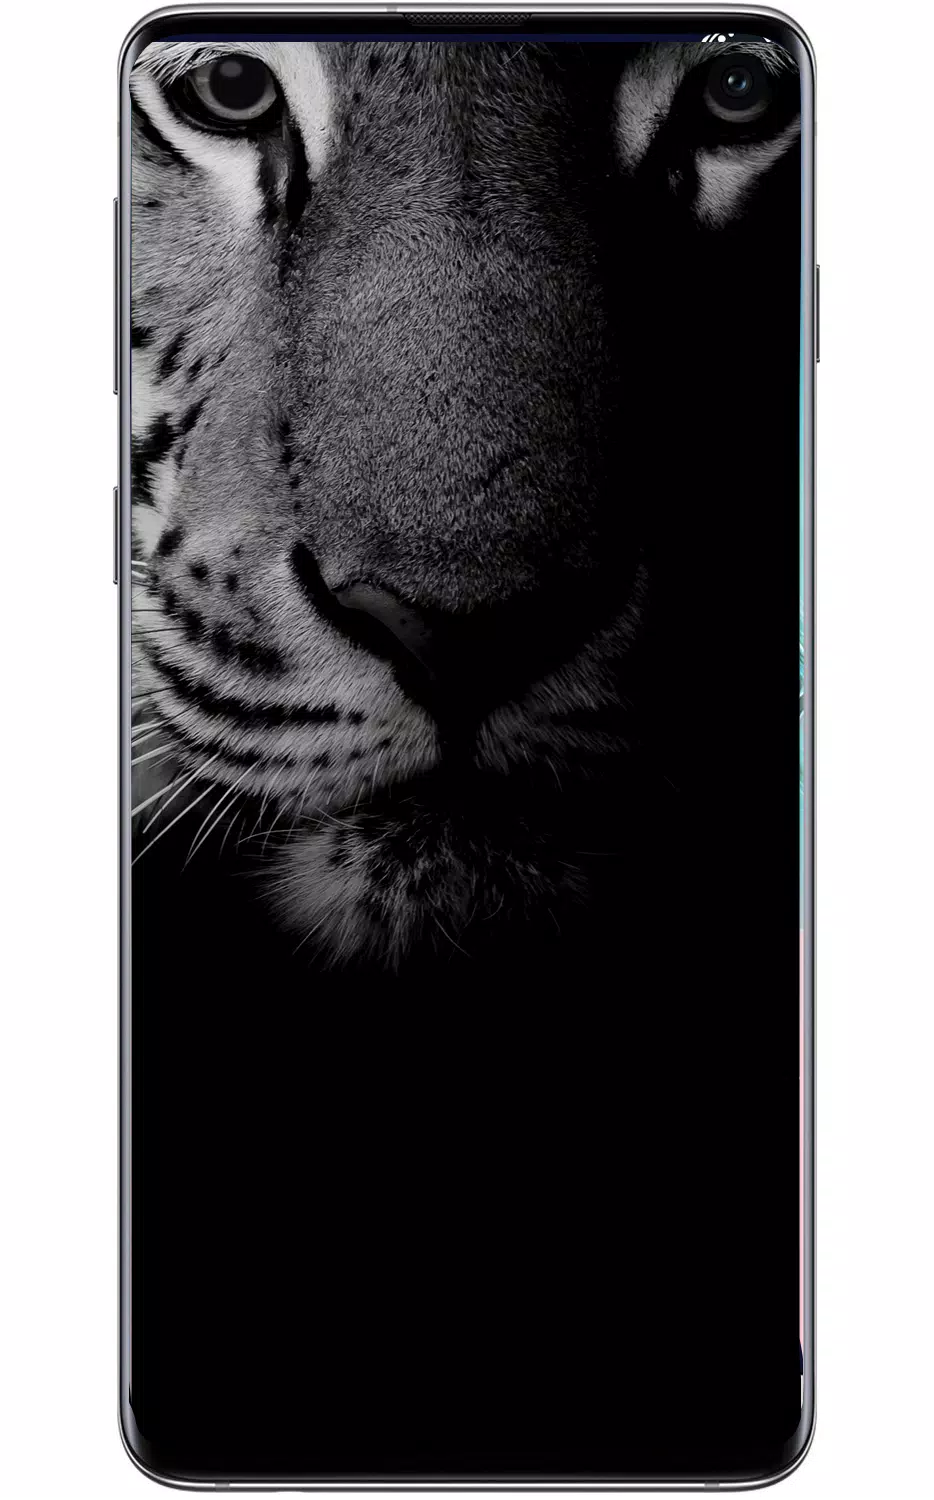 APK S10 Wallpaper là lựa chọn hoàn hảo cho những ai muốn tùy biến hình nền trên thiết bị Samsung Galaxy S10 của mình. Với những tính năng tiên tiến và hiện đại nhất, bạn sẽ có thể tạo ra những bức ảnh độc đáo và đẳng cấp nhất cho chiếc điện thoại của mình.